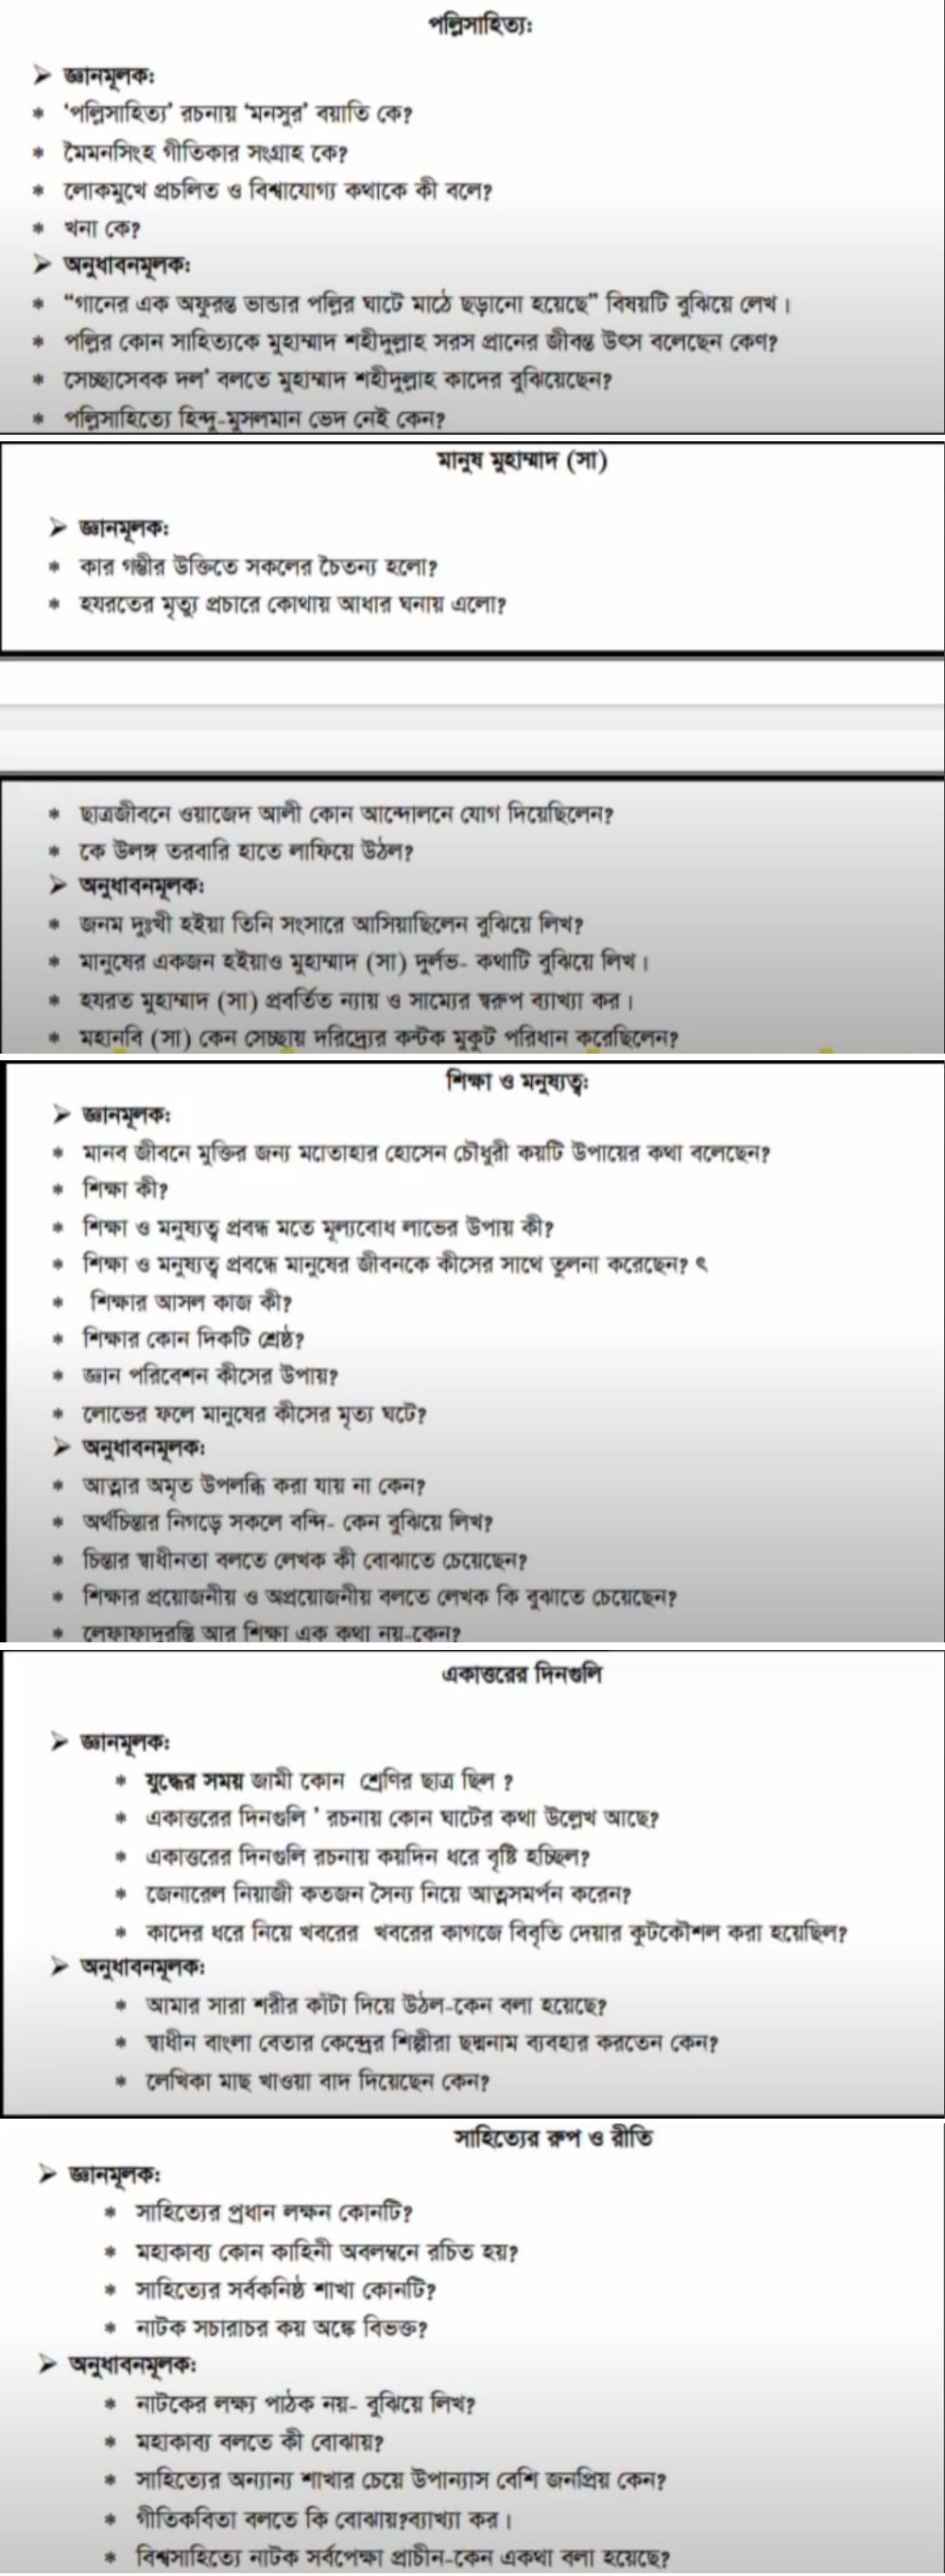 দাখিল বাংলা ১ম পত্র সাজেশন ২০২২ (১০০% কমন)  | Dhakil Bangla 1st Paper Suggestion 2022